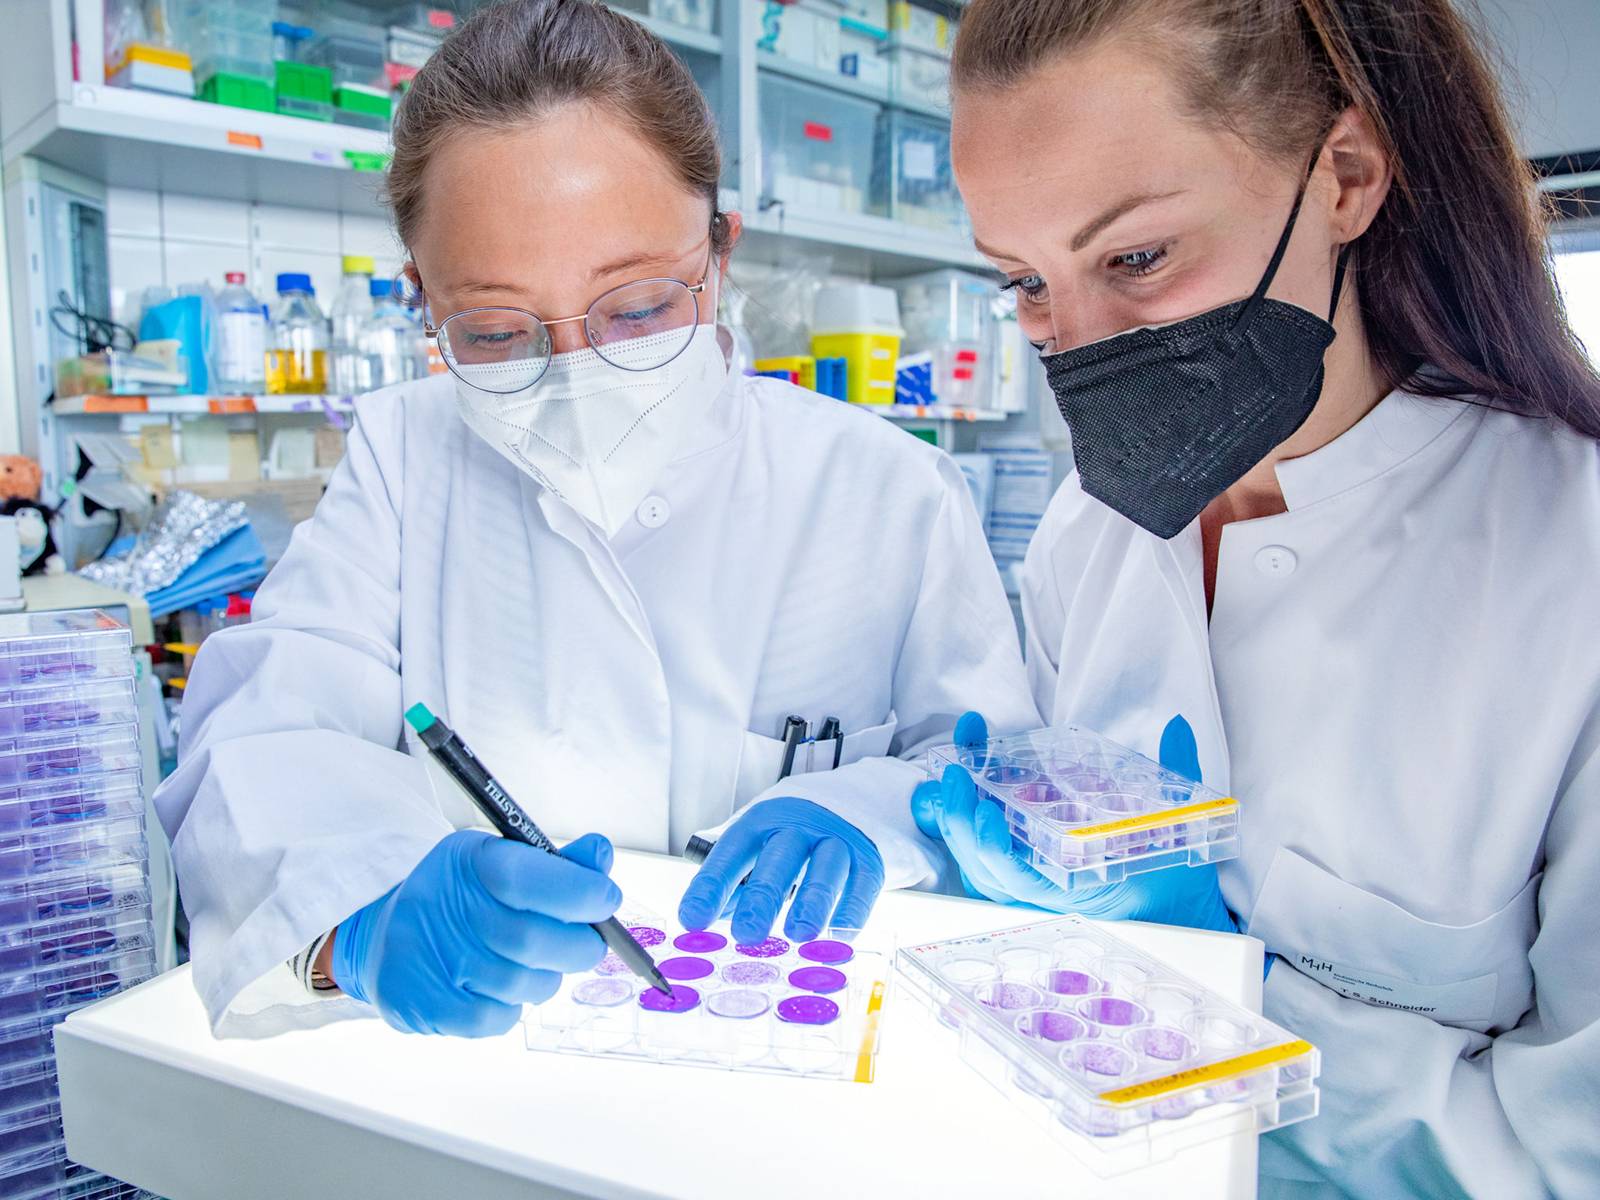 Zwei Frauen mit weißenKitteln und Nasen-Mundschutz-Masken in einem medizinischen Labor bei der Arbeit mit Zellkulturplatten.